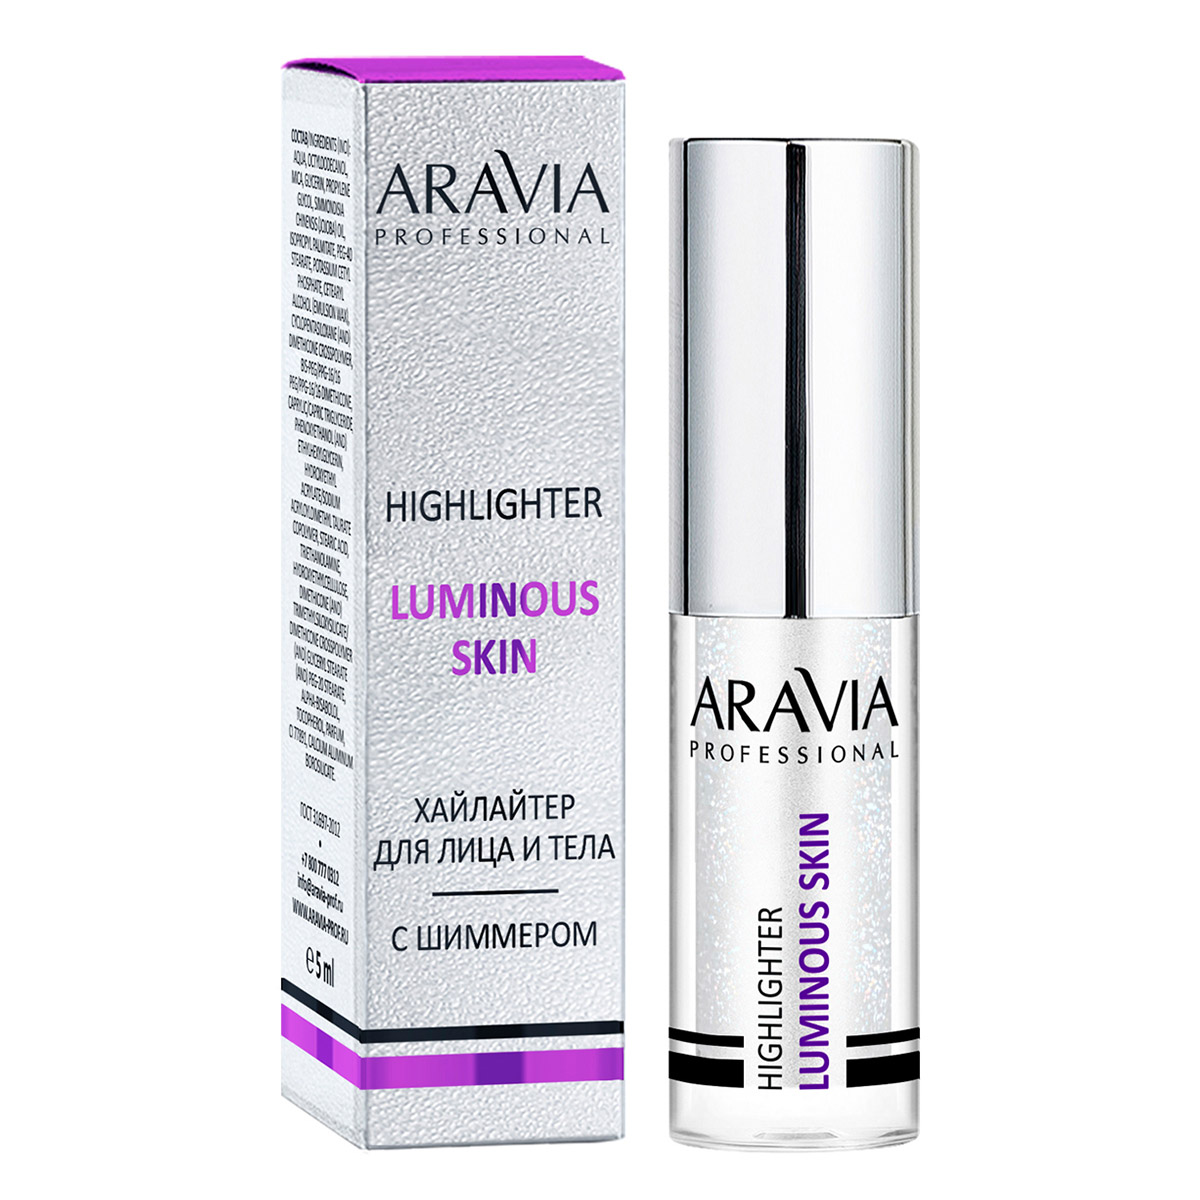 Aravia Professional Хайлайтер с шиммером жидкий для лица и тела Luminous Skin, 5 мл (Aravia Professional, Декоративная косметика) цена и фото